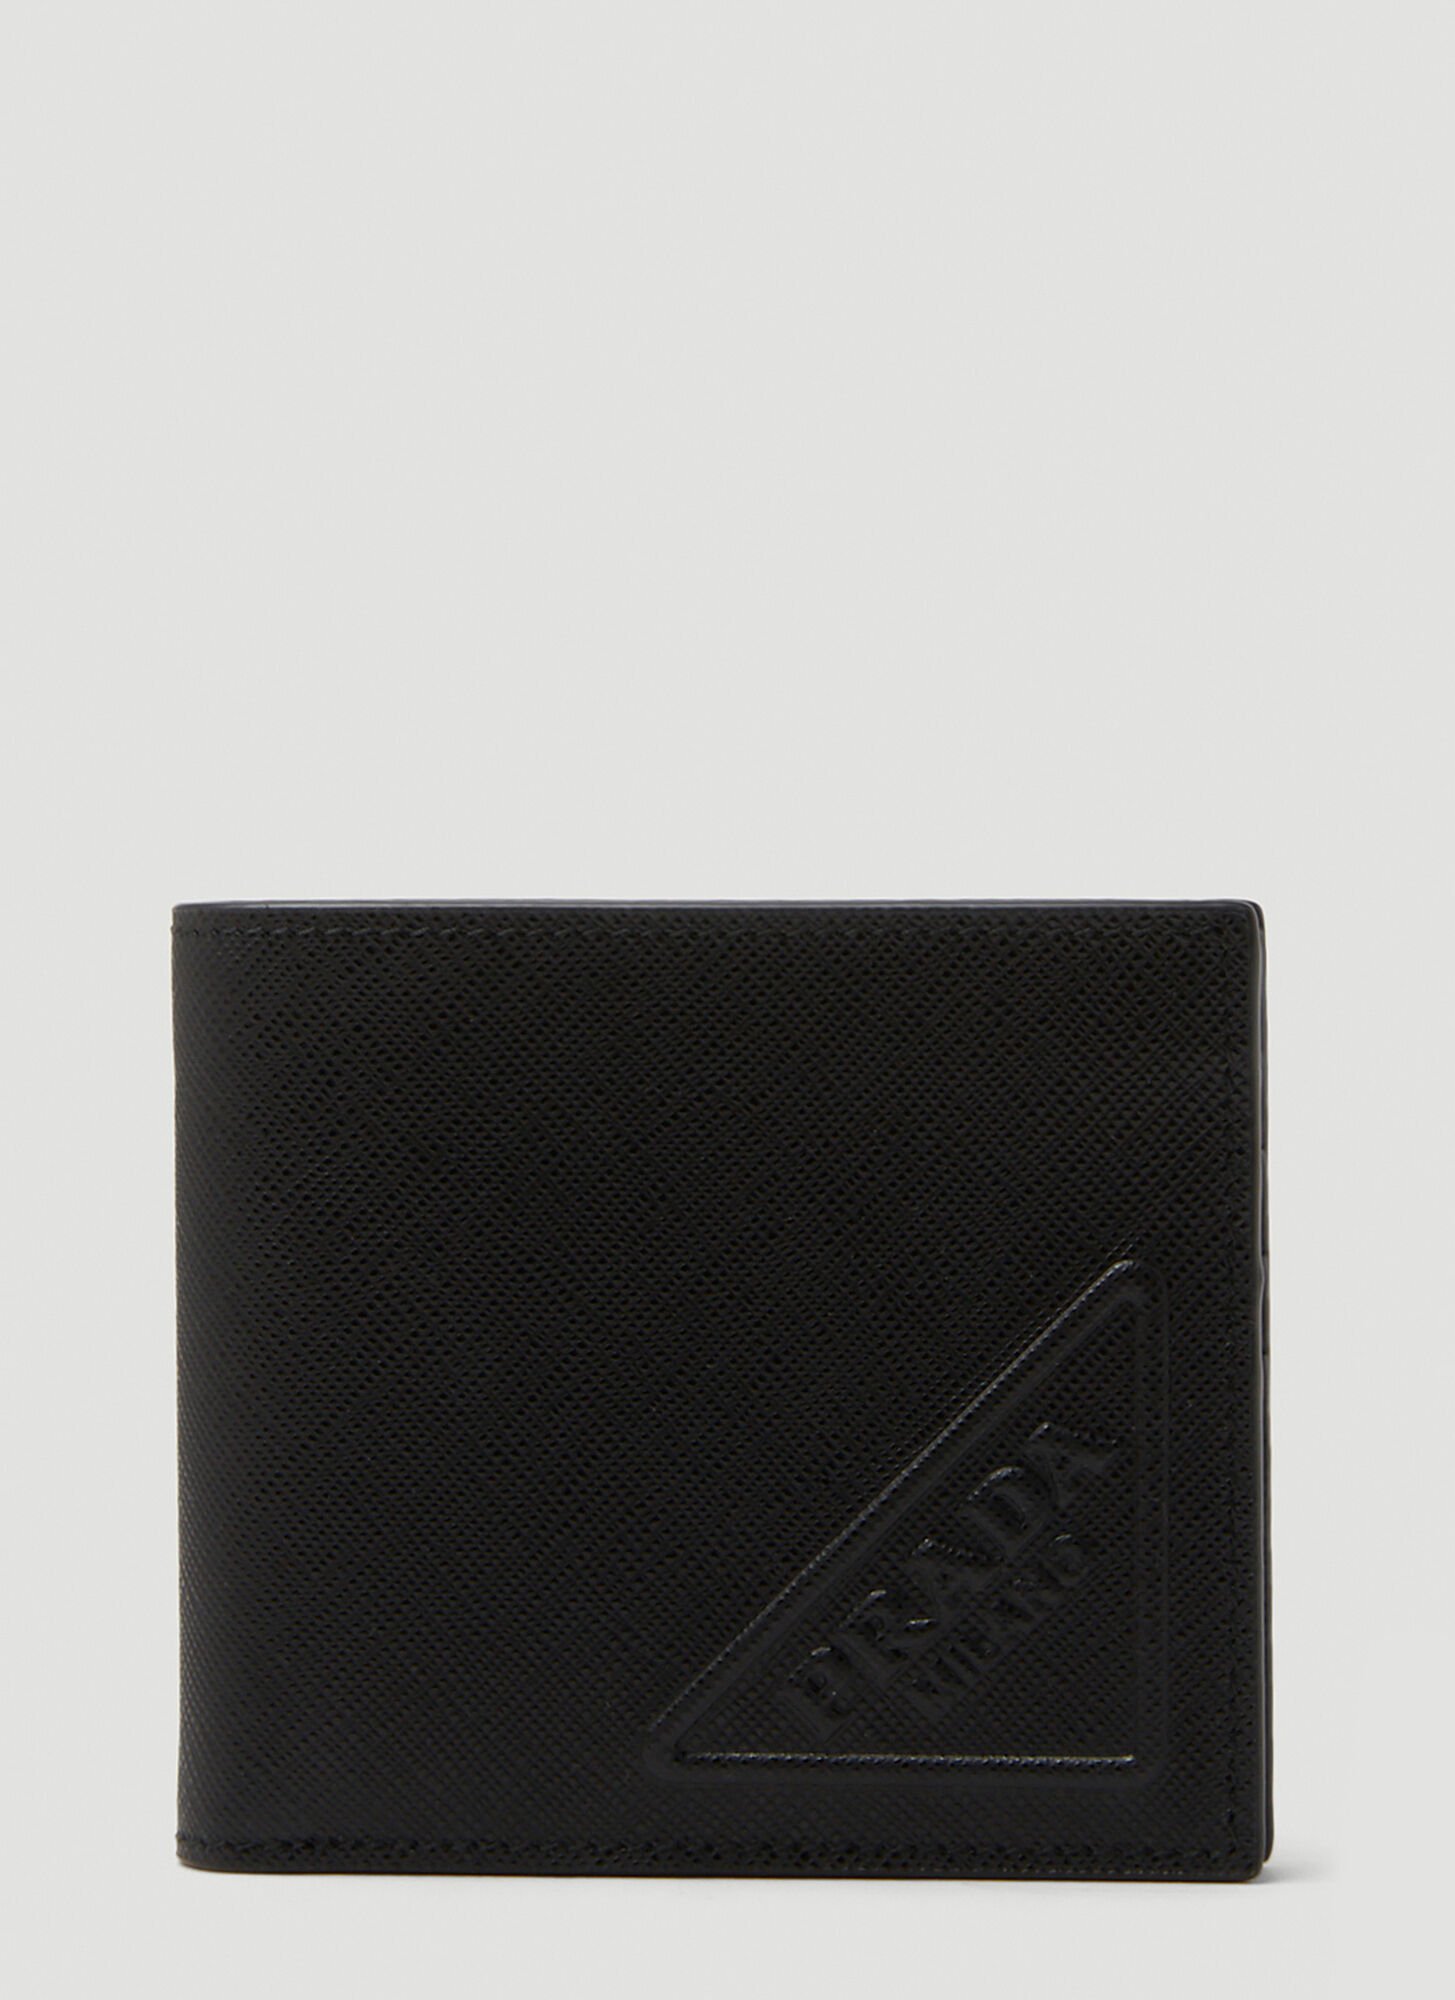 Prada Bi-fold Logo Wallet In Black